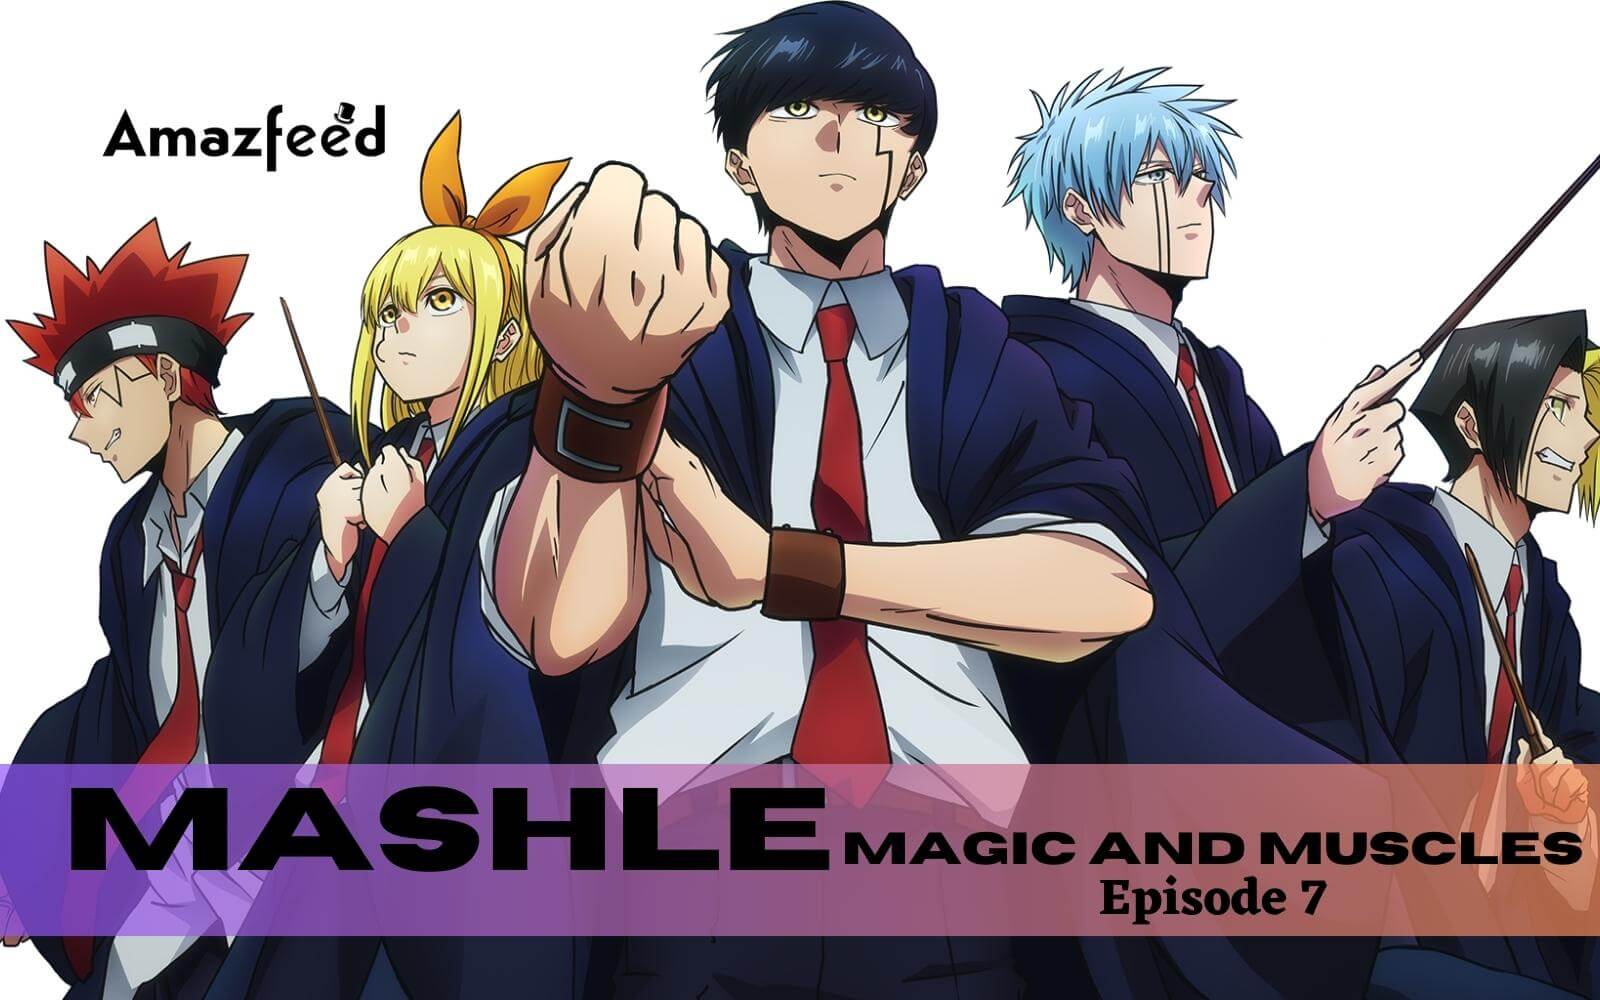 mashle ep 7 dublado #Anime #anime #otakubr #JLAnimes #mashle #mash